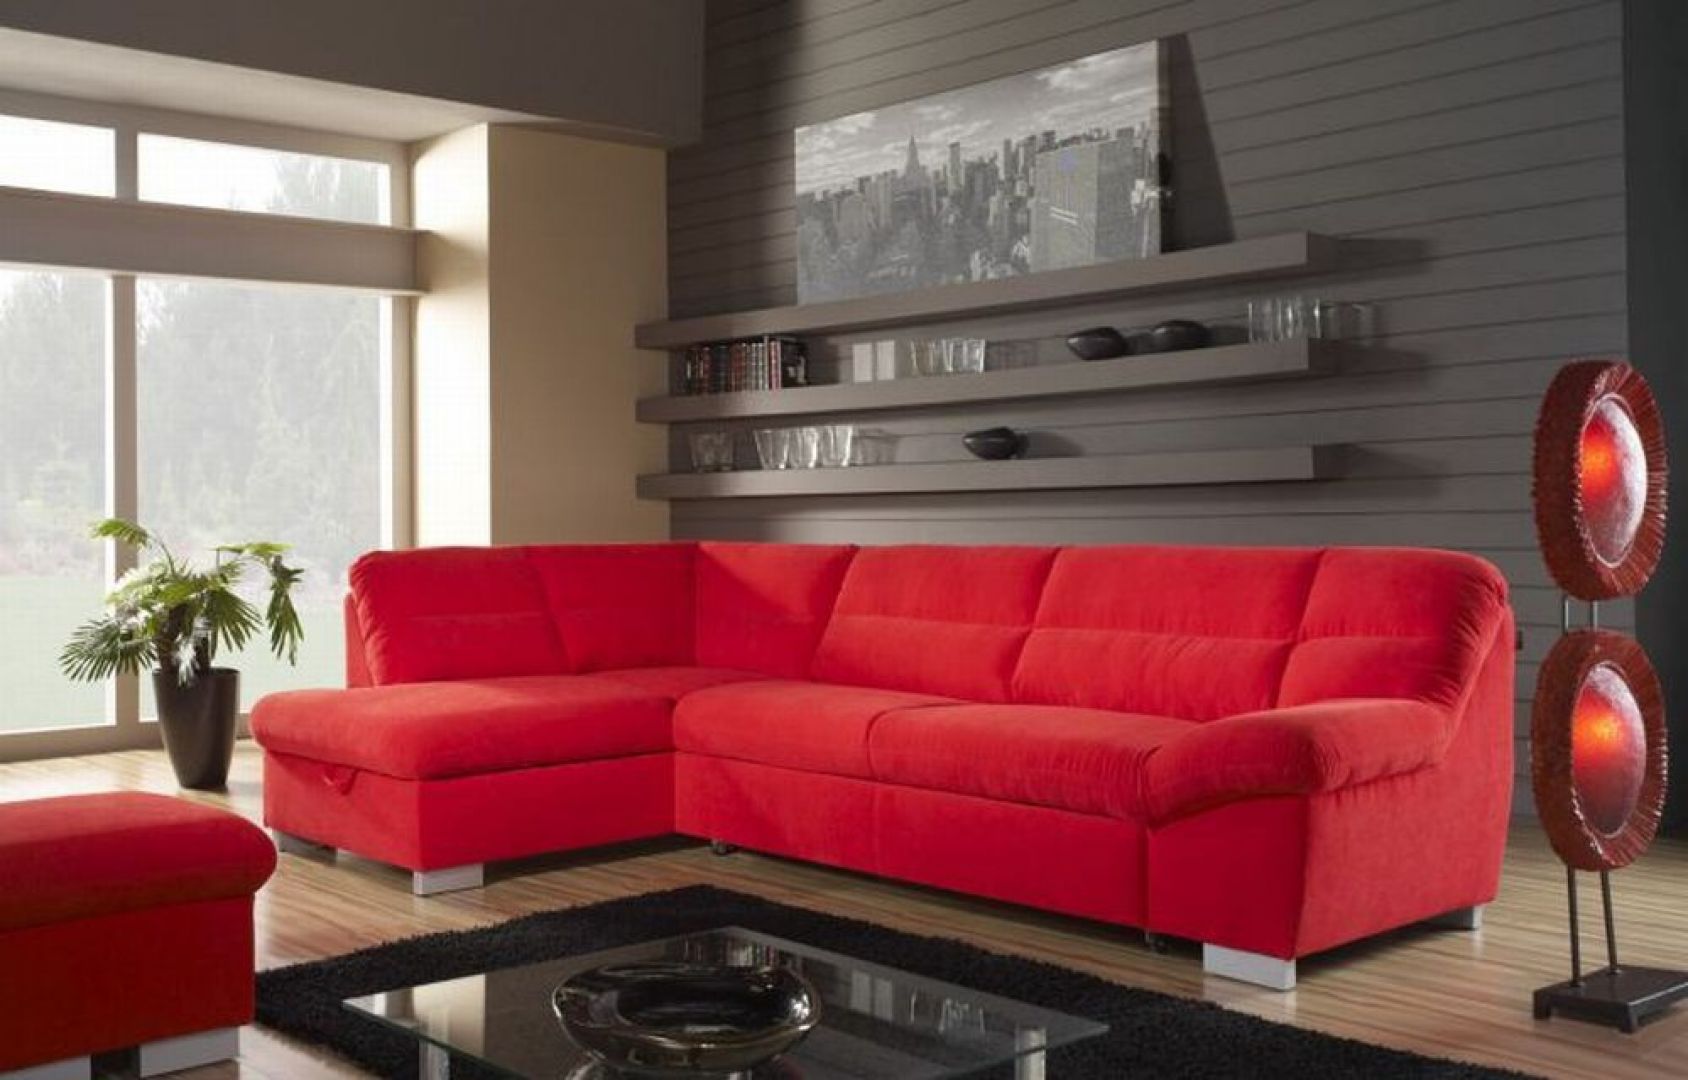 Czerwony narożnik, jest bardzo charakterystycznym meblem w salonie
Fot. HF Helvetia Furniture